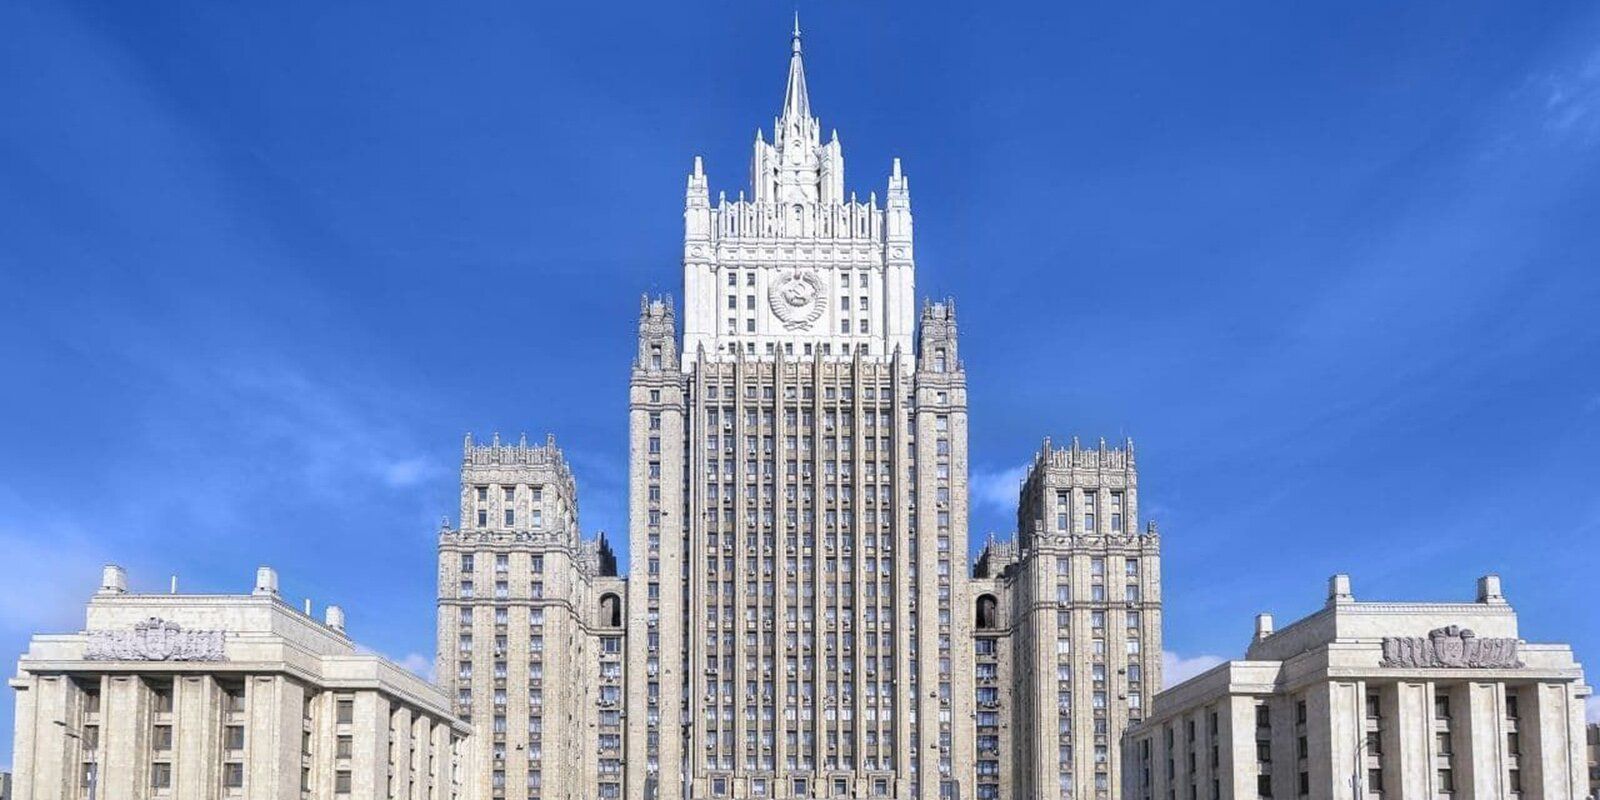  Министерство иностранных дел России